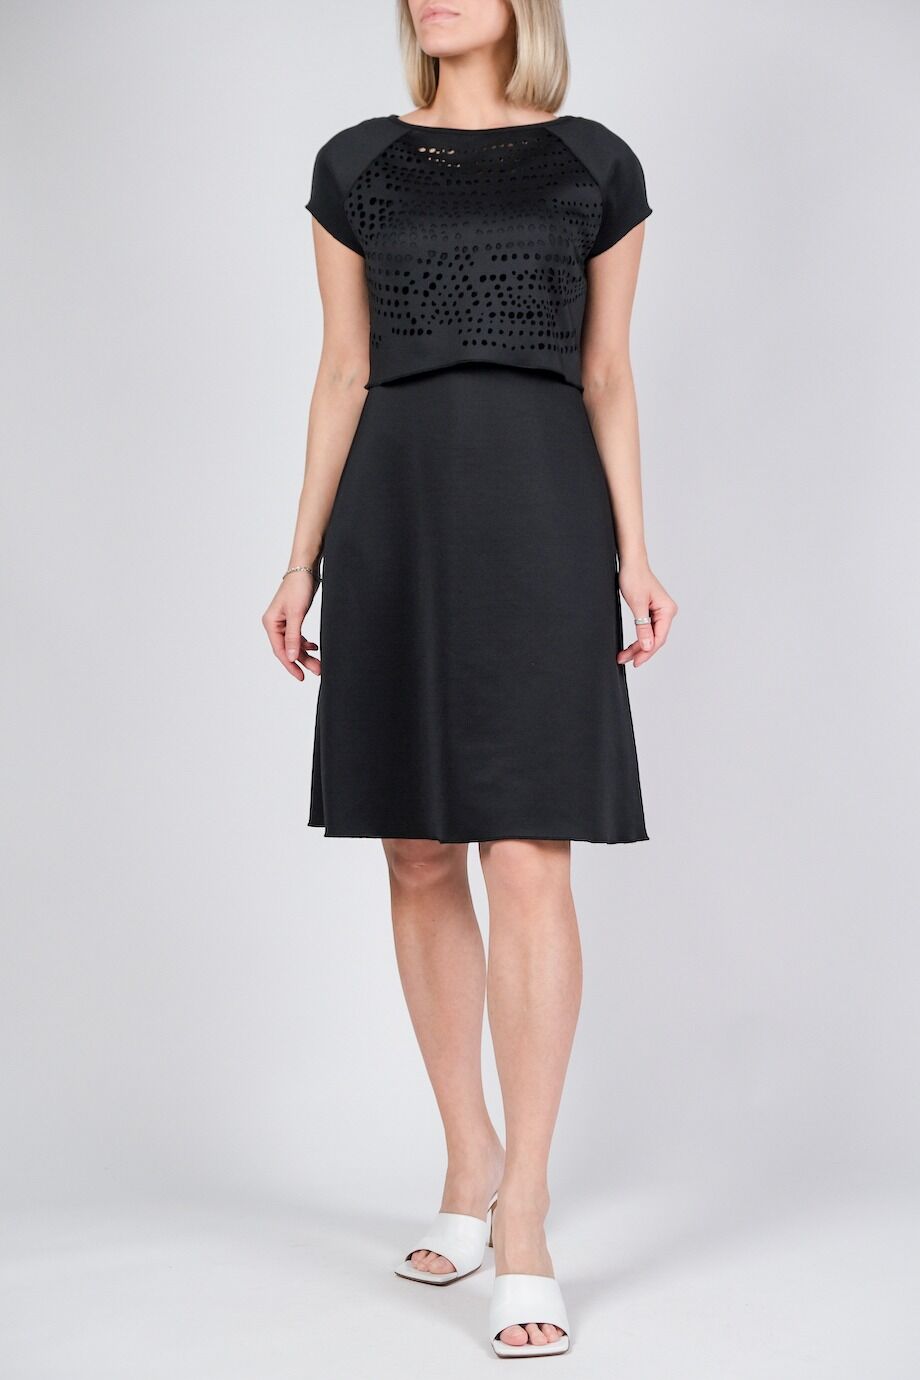 image 1 Платье черного цвета со съемным топом с перфорацией